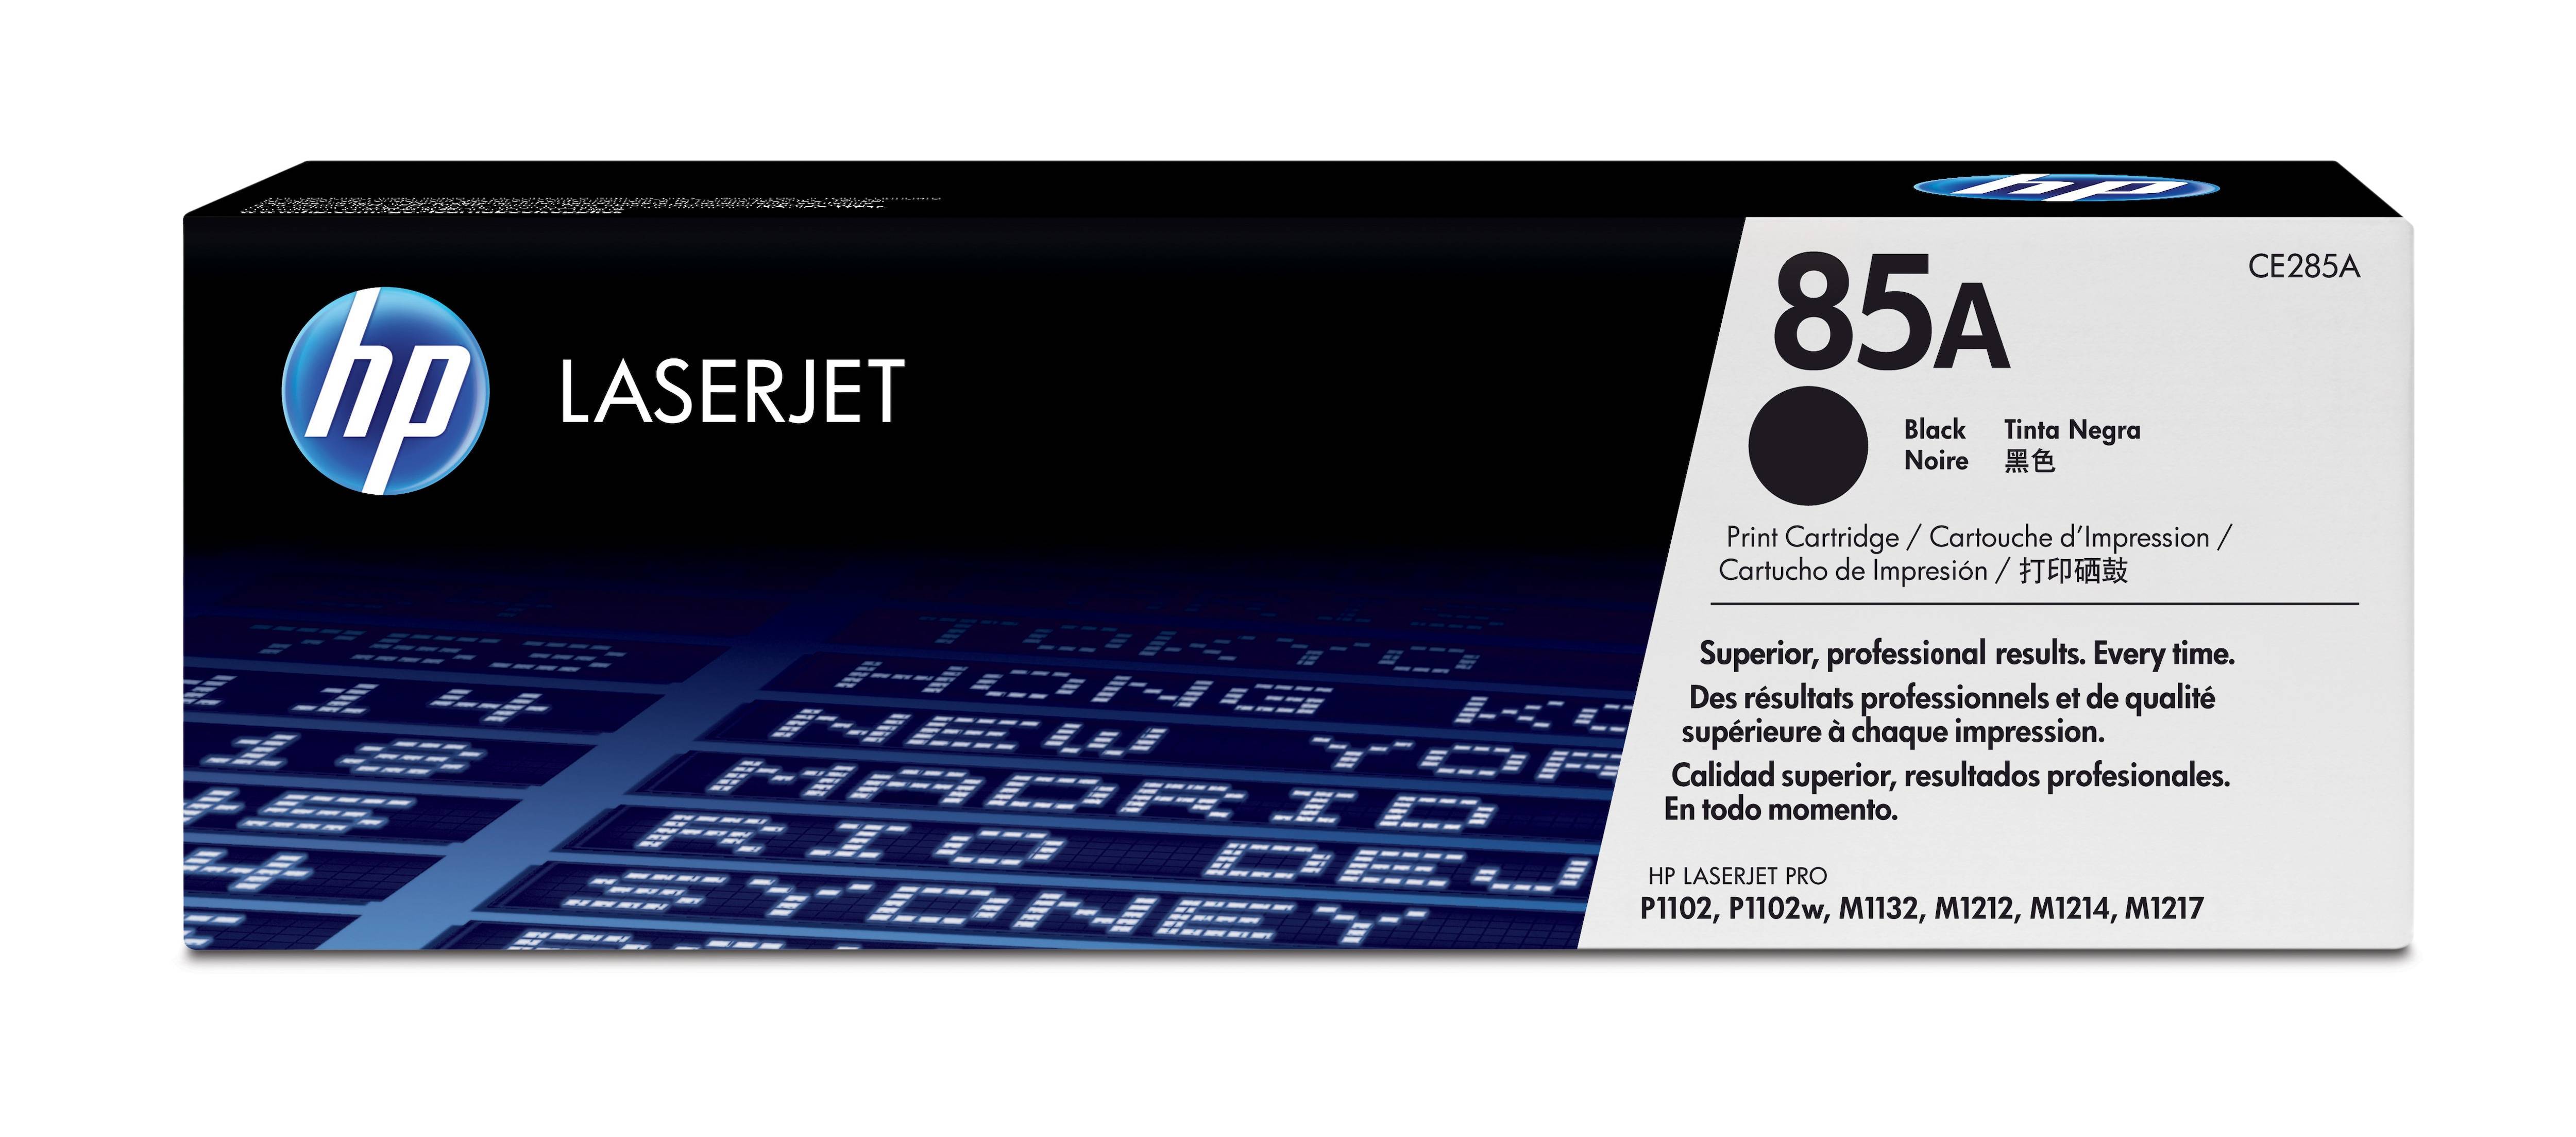 Rca Informatique - Image du produit : TONER CARTRIDGE 85A BLACK FOR HP LASERJET